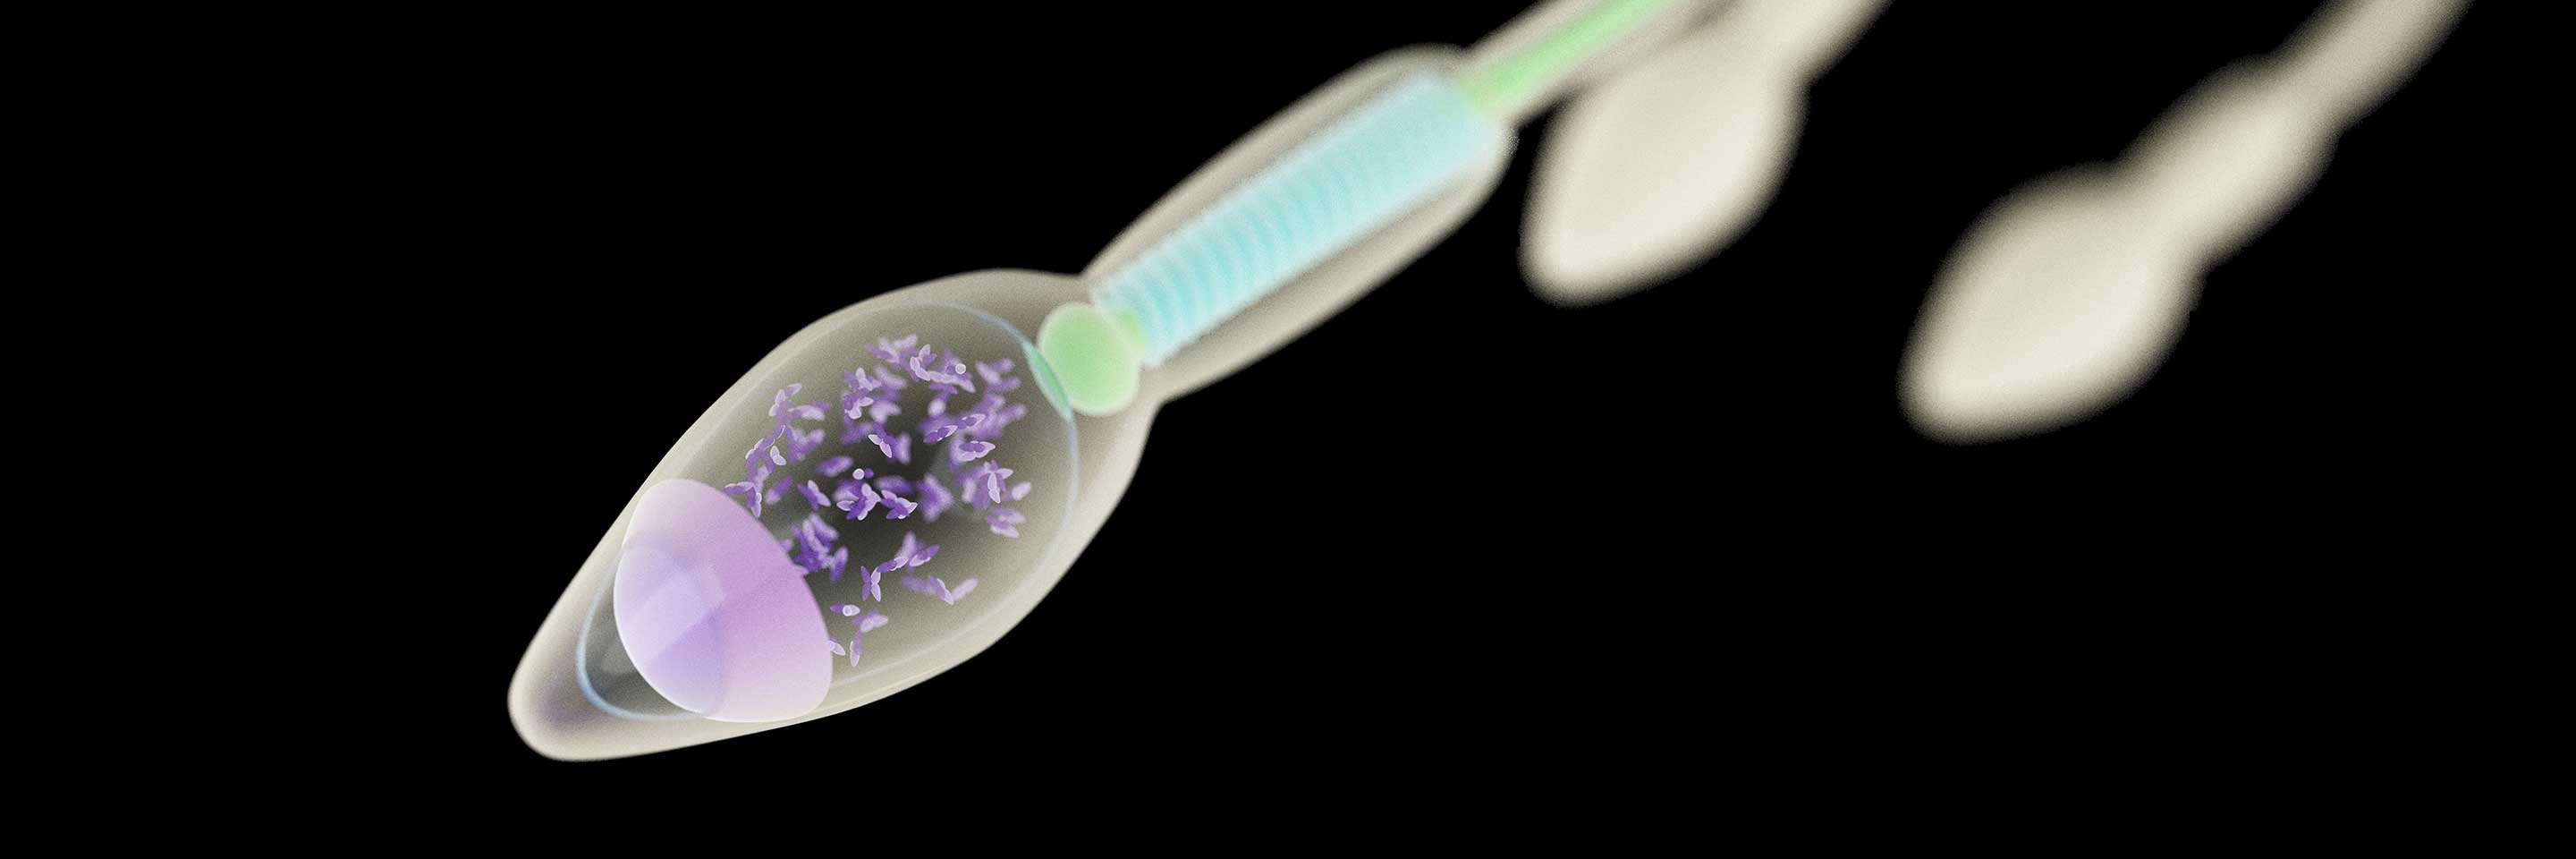 5 фактов о сперме, которые вас удивят    